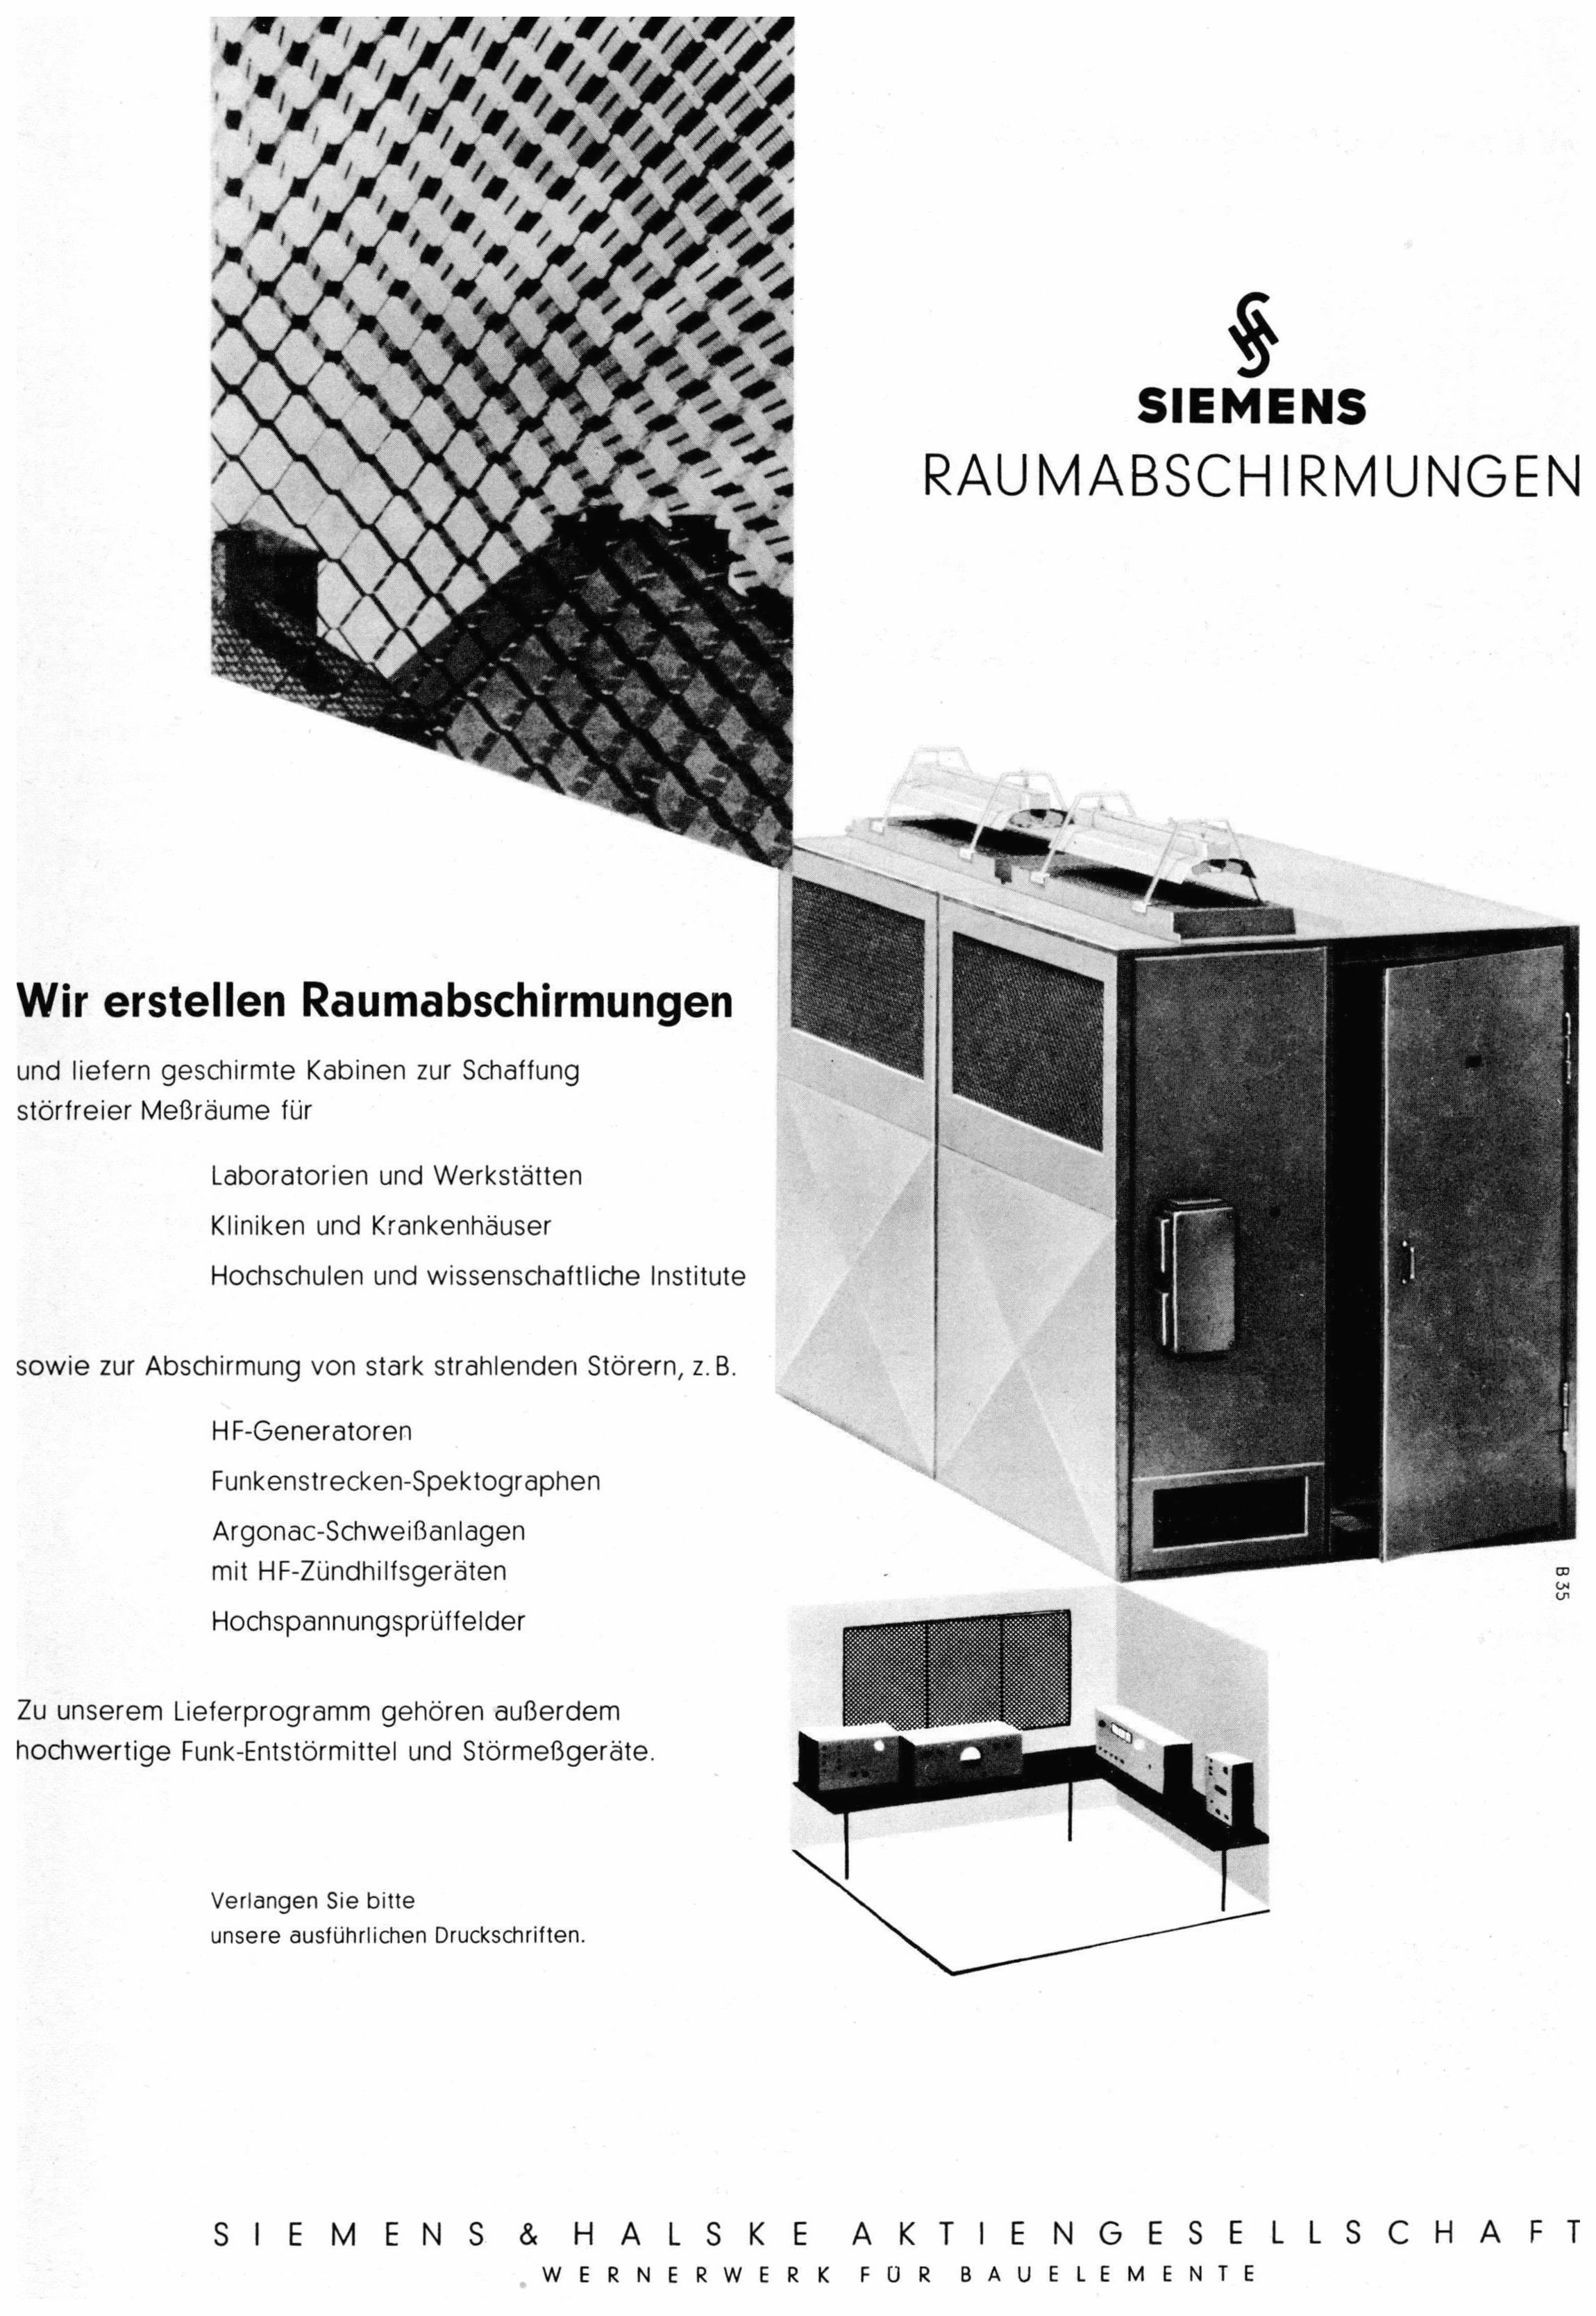 Siemens 1959 4.jpg